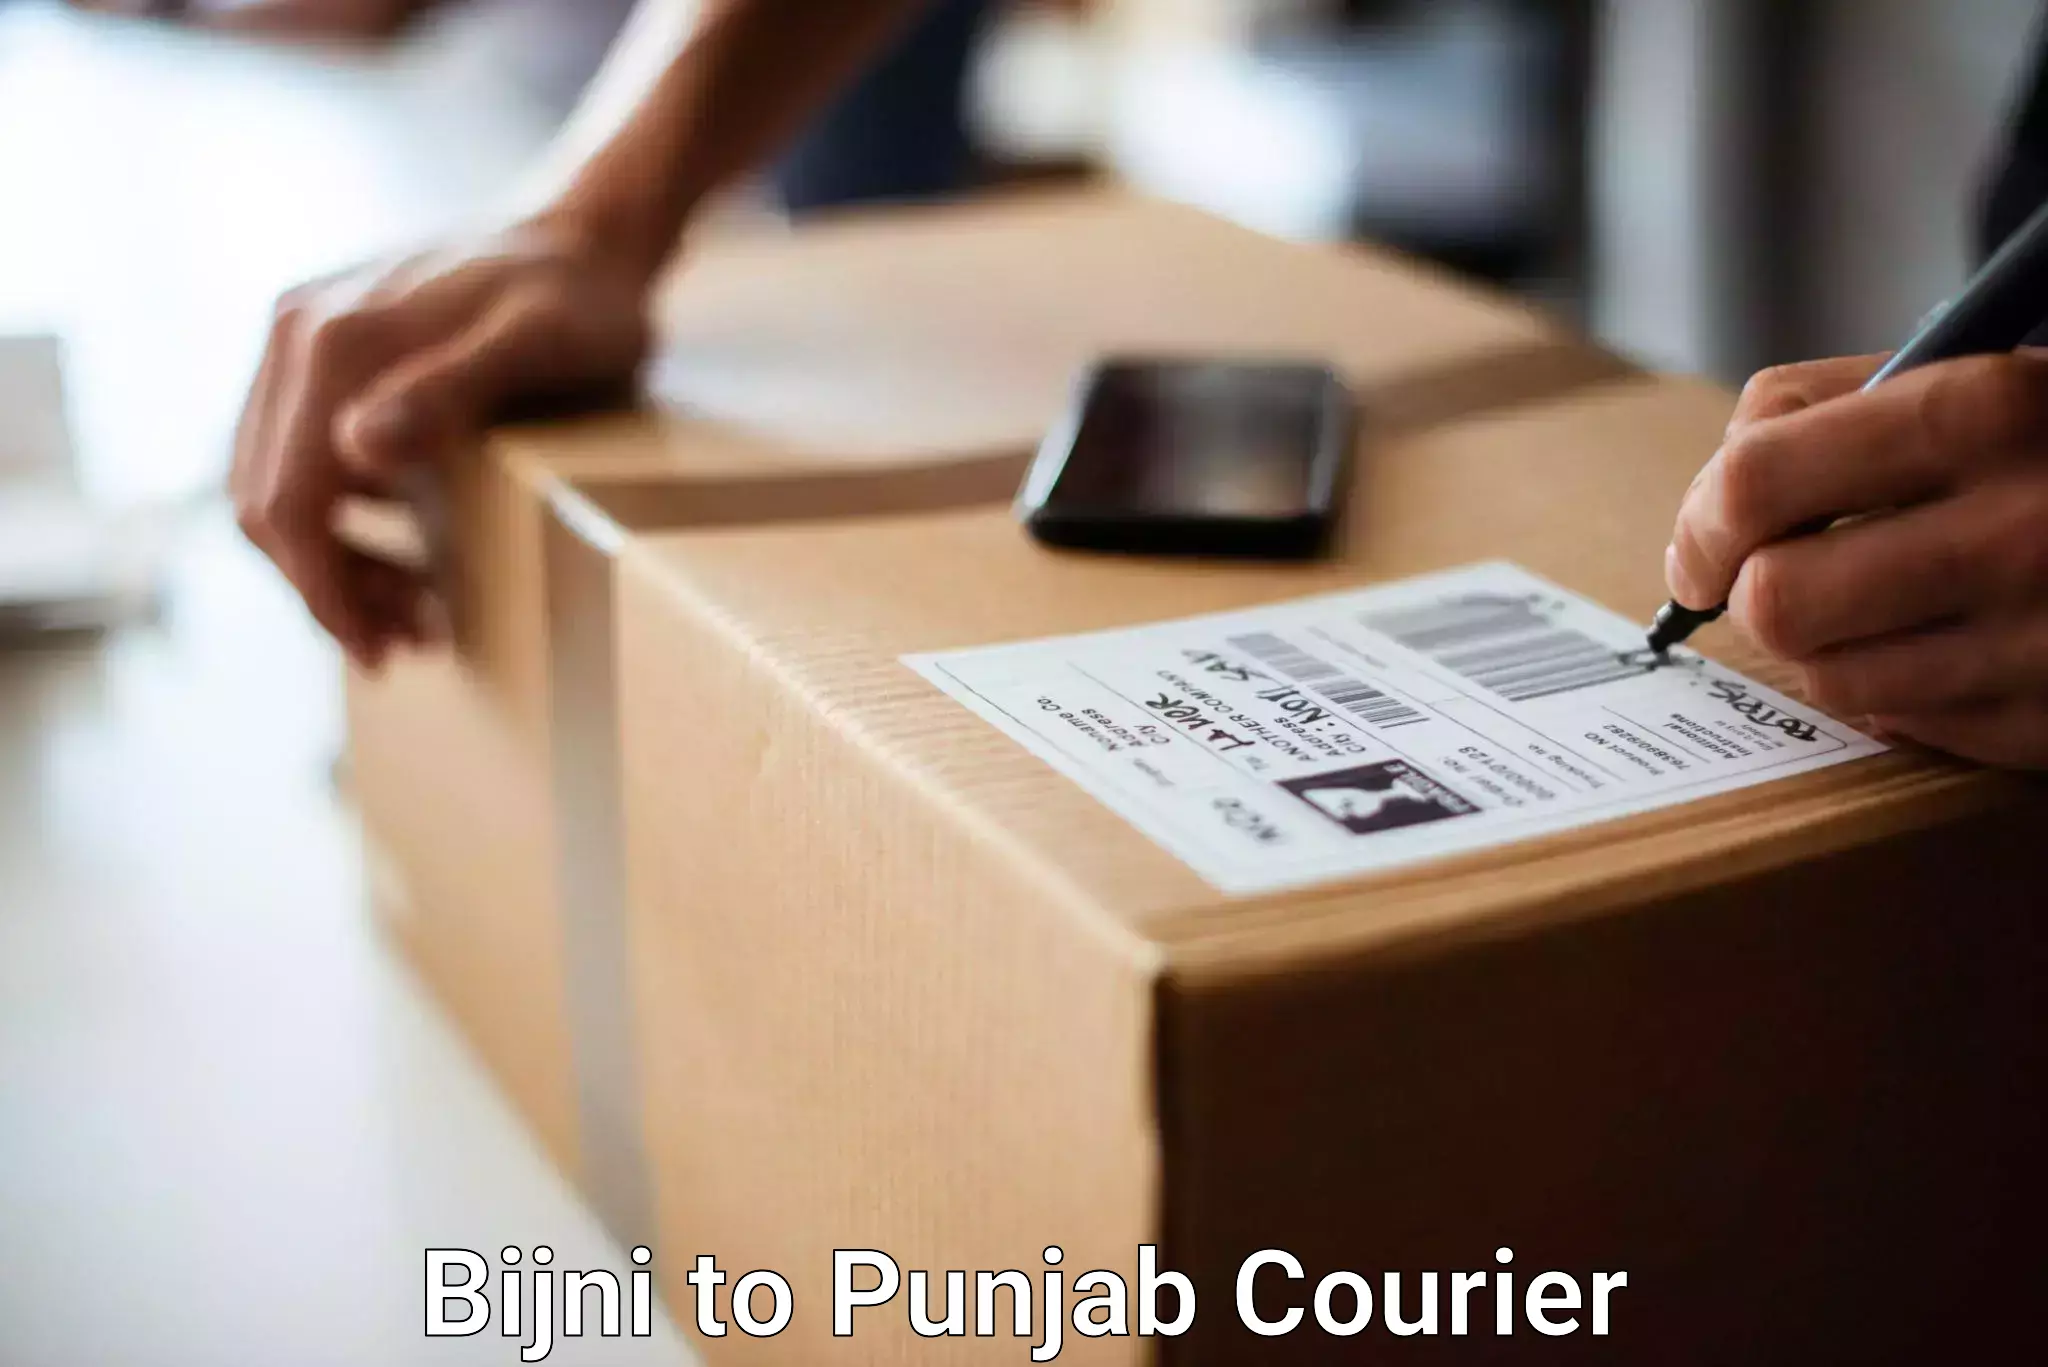 Baggage transport services Bijni to Punjab